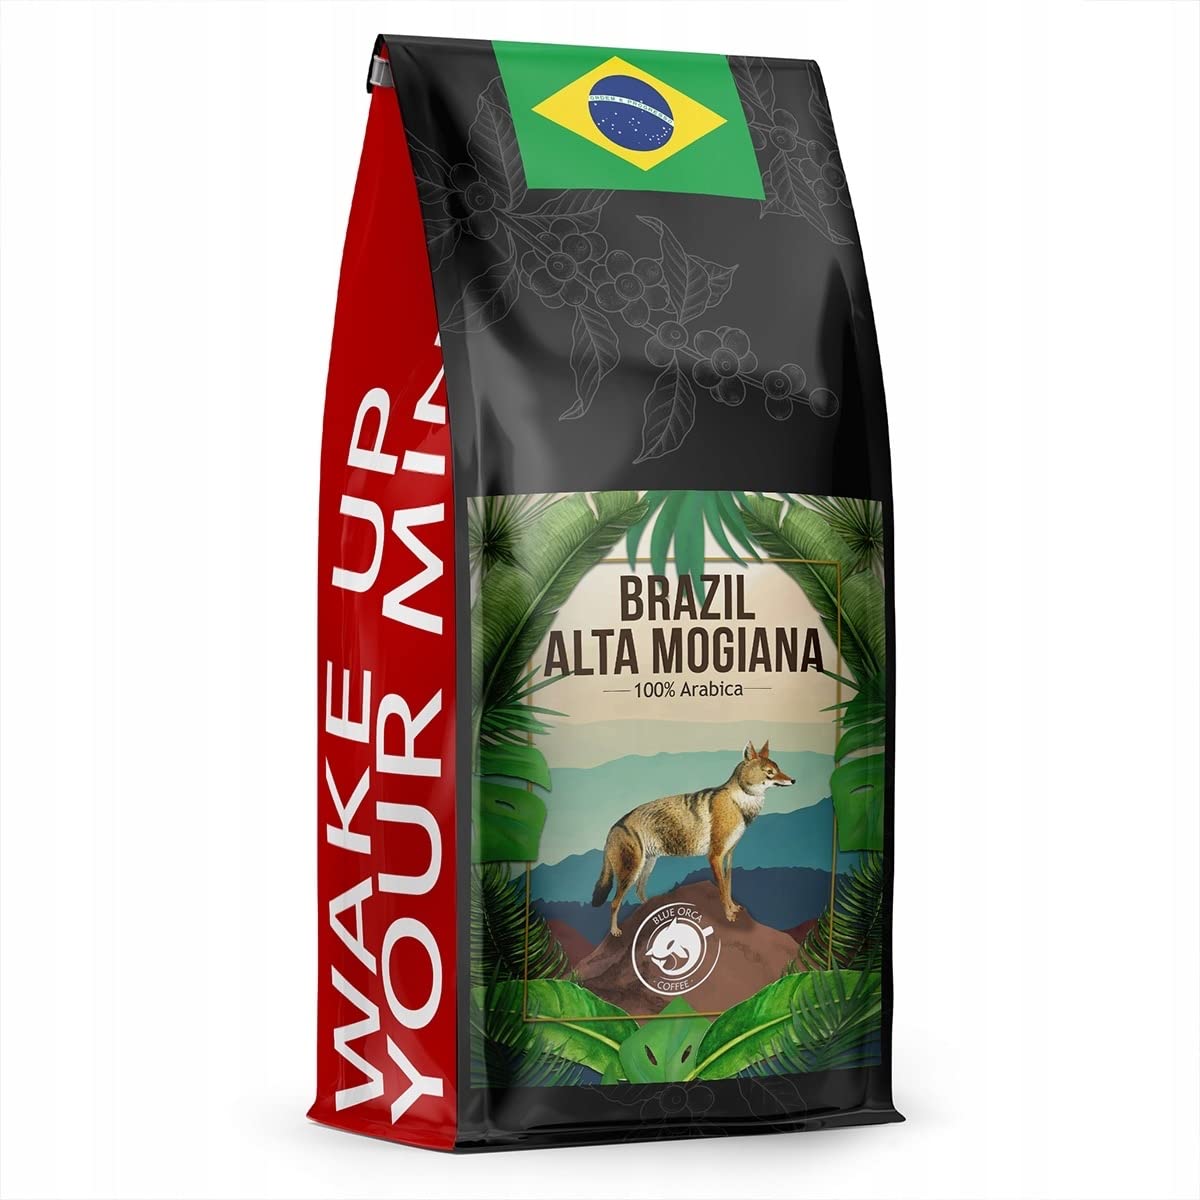 Blue Orca Coffee - BRAZIL ALTA MOGIANA - Specialty Kaffeebohnen aus Brasilien, Hochland von Alta Mogiana - Frisch geröstet - Single Origin - SCA 82.5 Punkte, 1 kg
